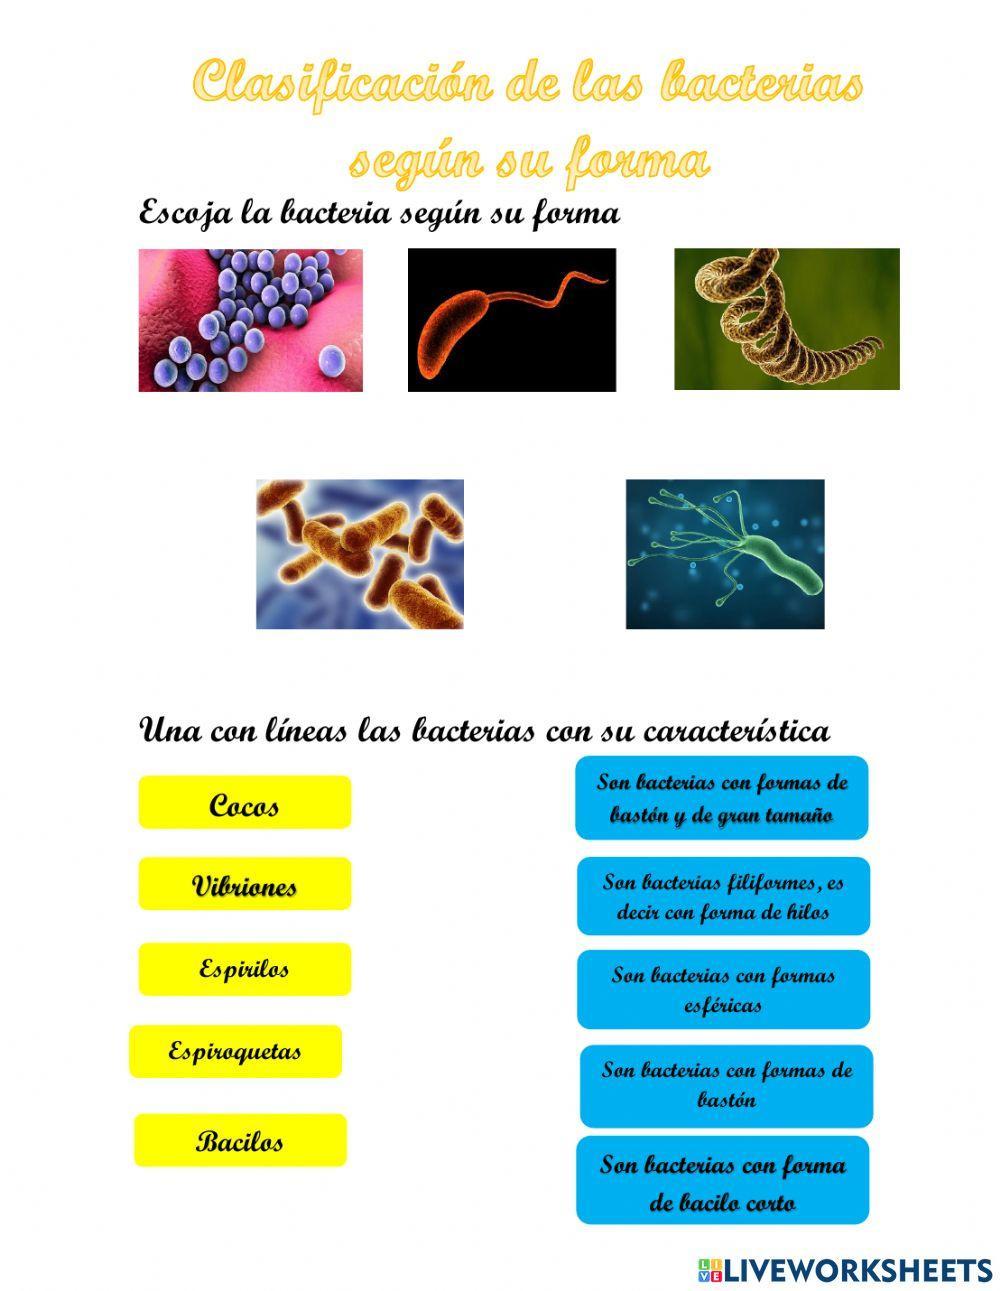 Clasificación de las bacterias según su forma